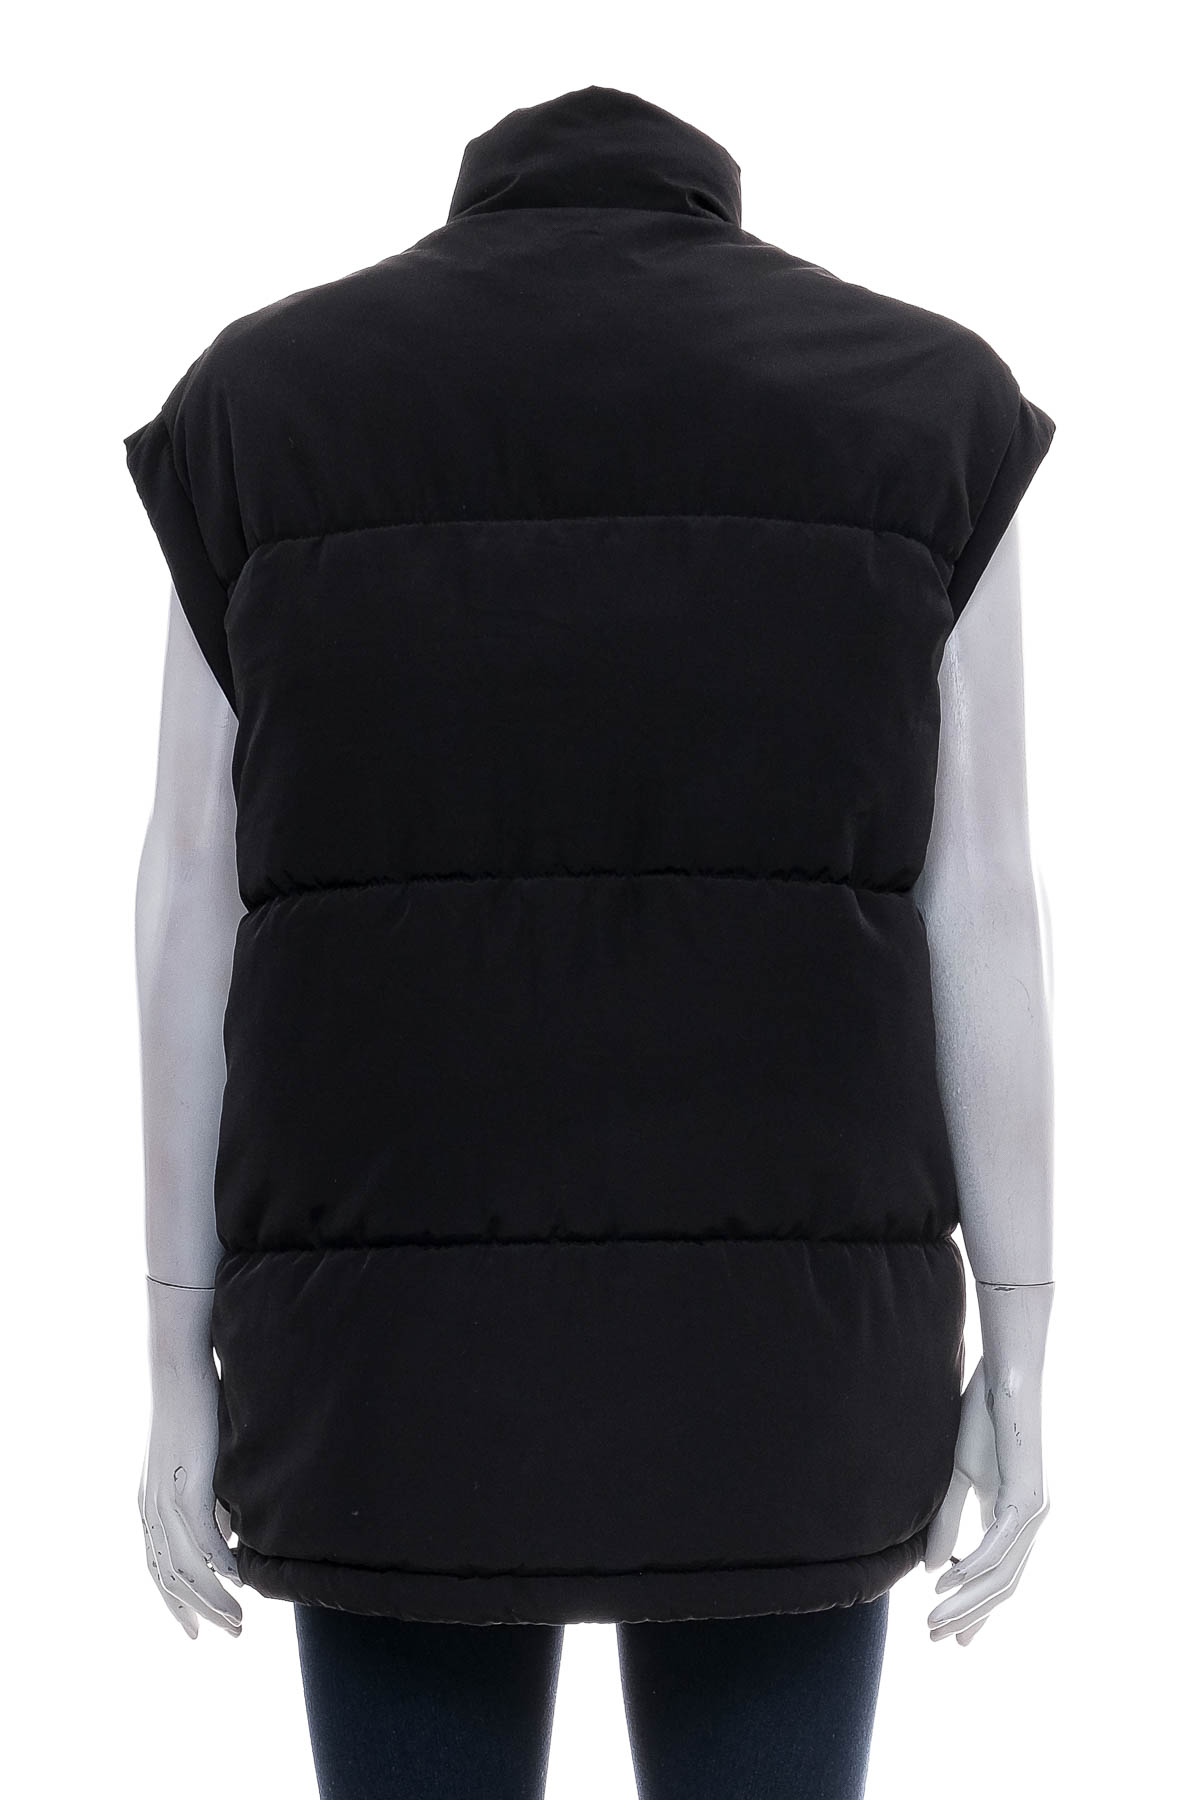 Women's vest - DIVIDED - 1